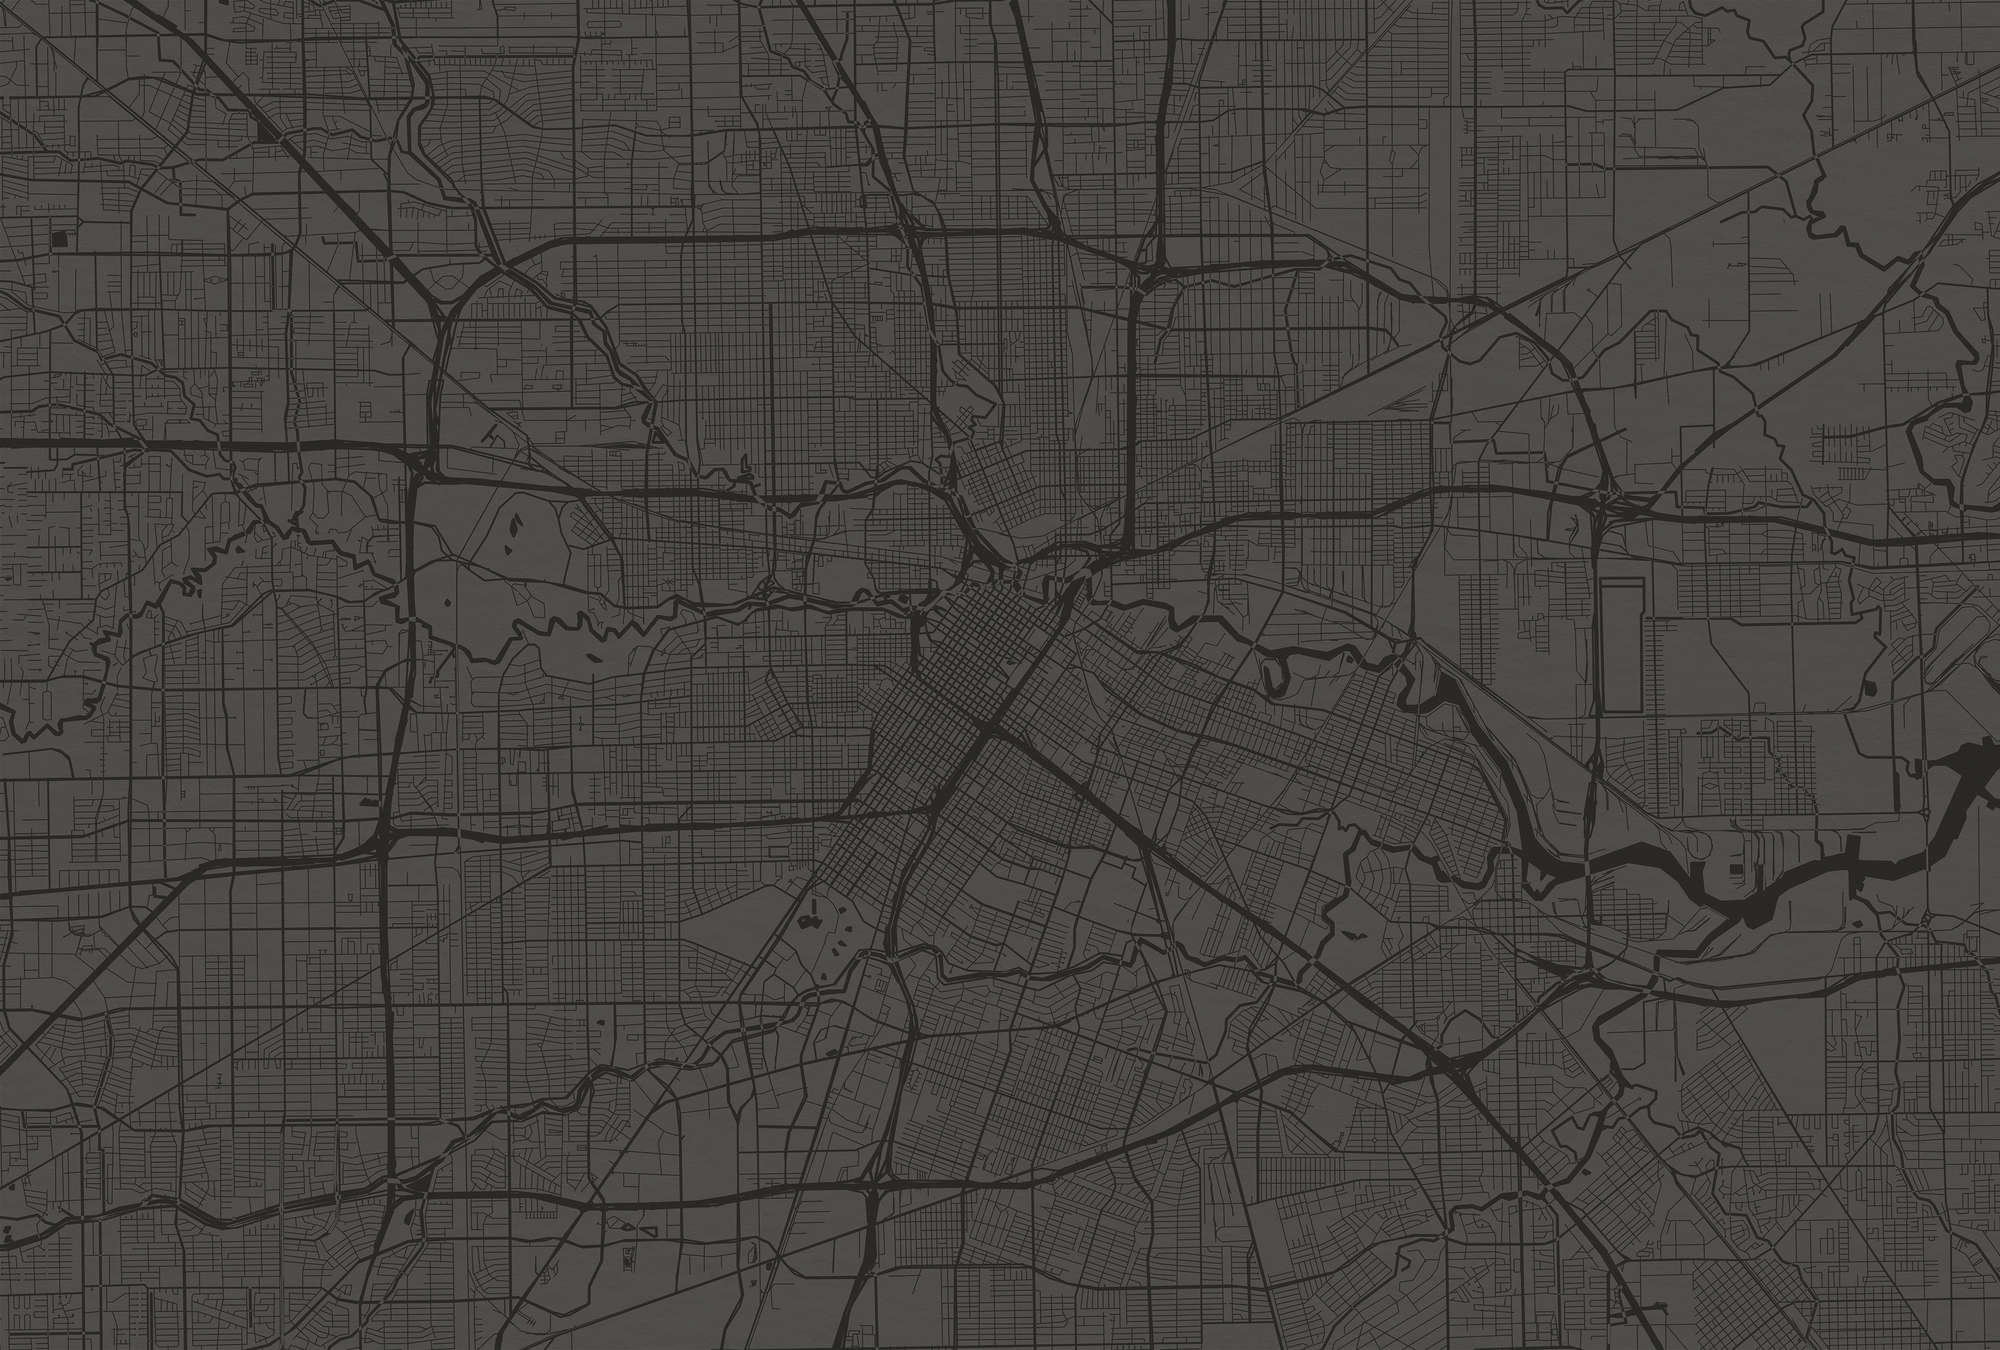             Muurschildering Stadsplattegrond met stratenplan - Zwart
        